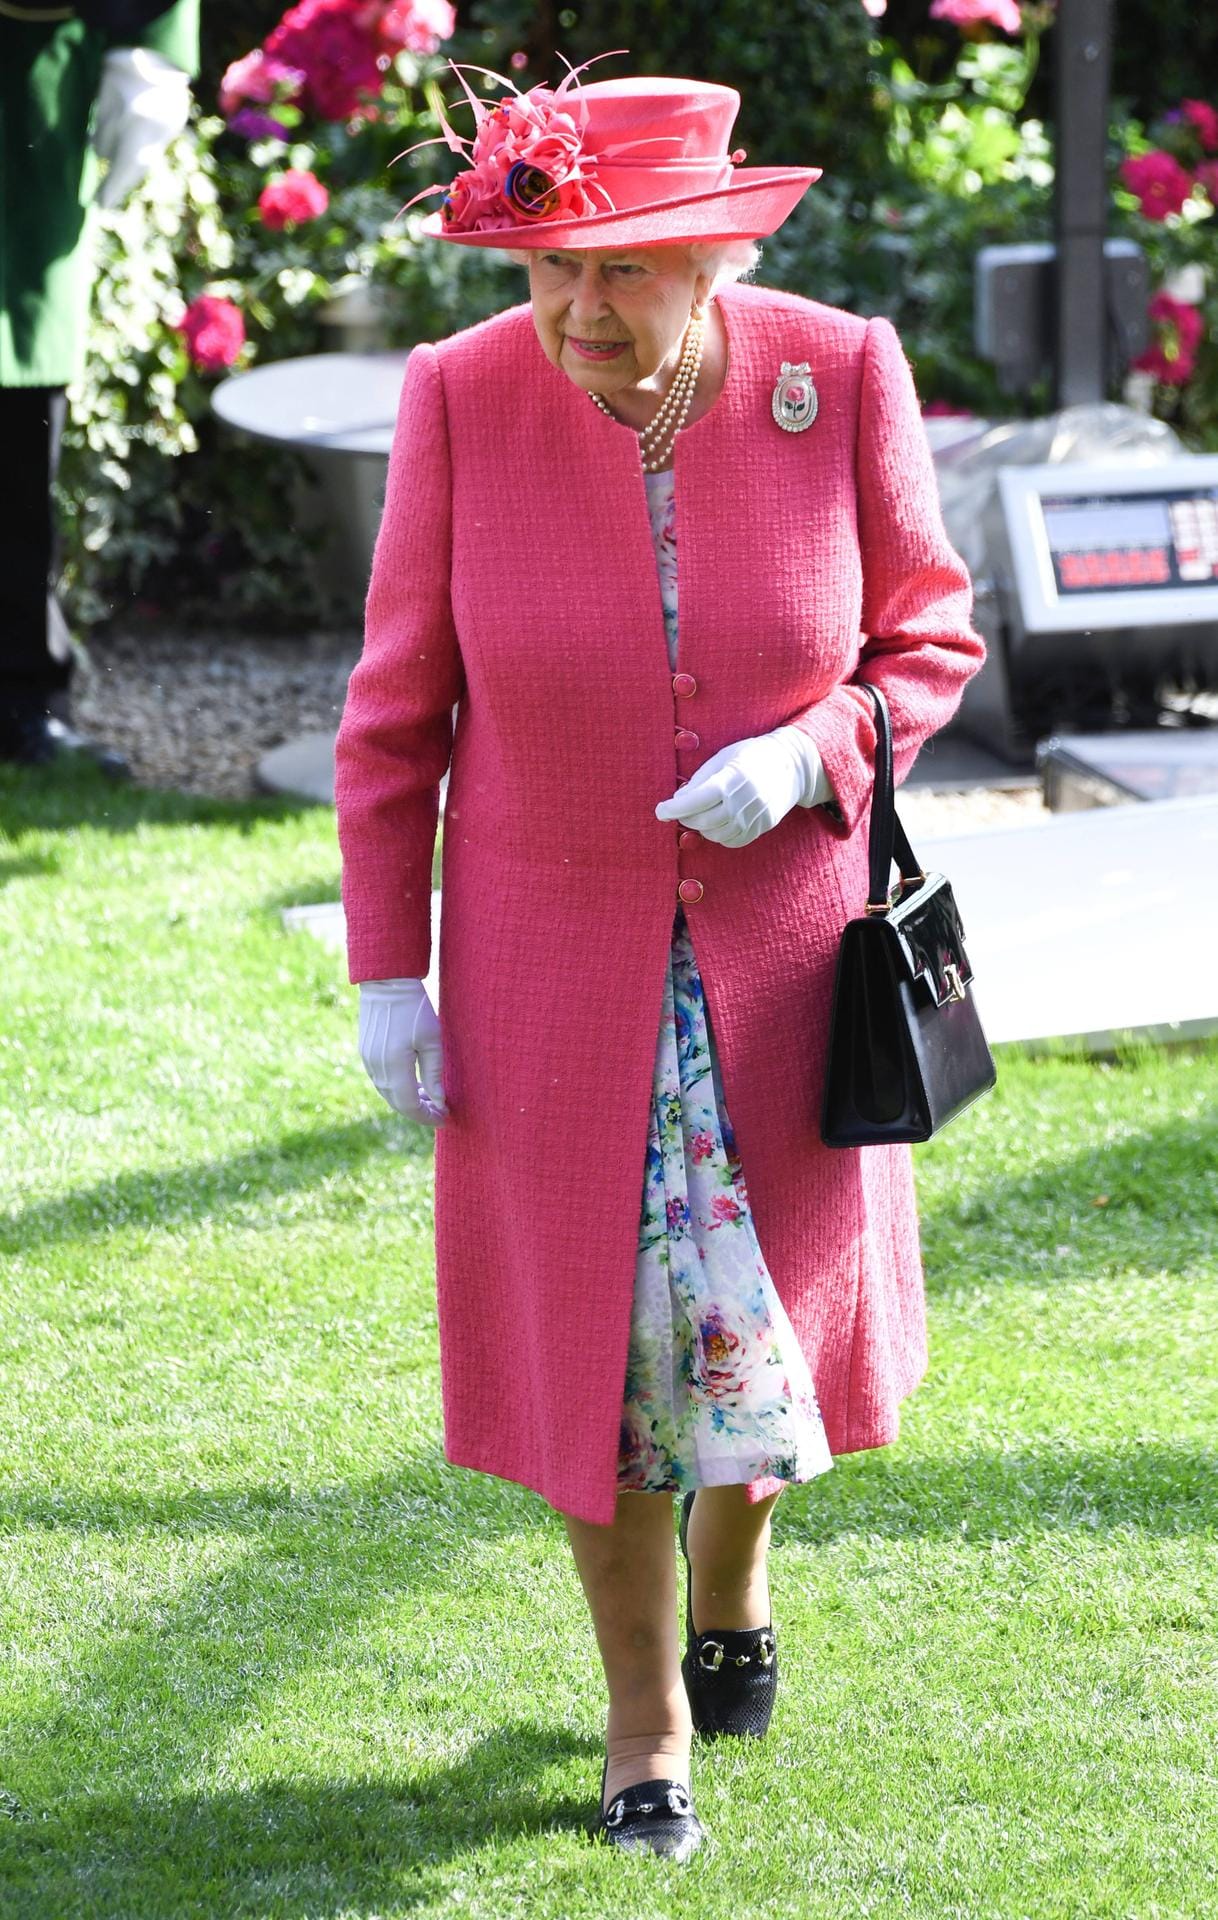 Immer farbenfroh unterwegs: Queen Elizabeth II. setzt auf knallige Akzente.